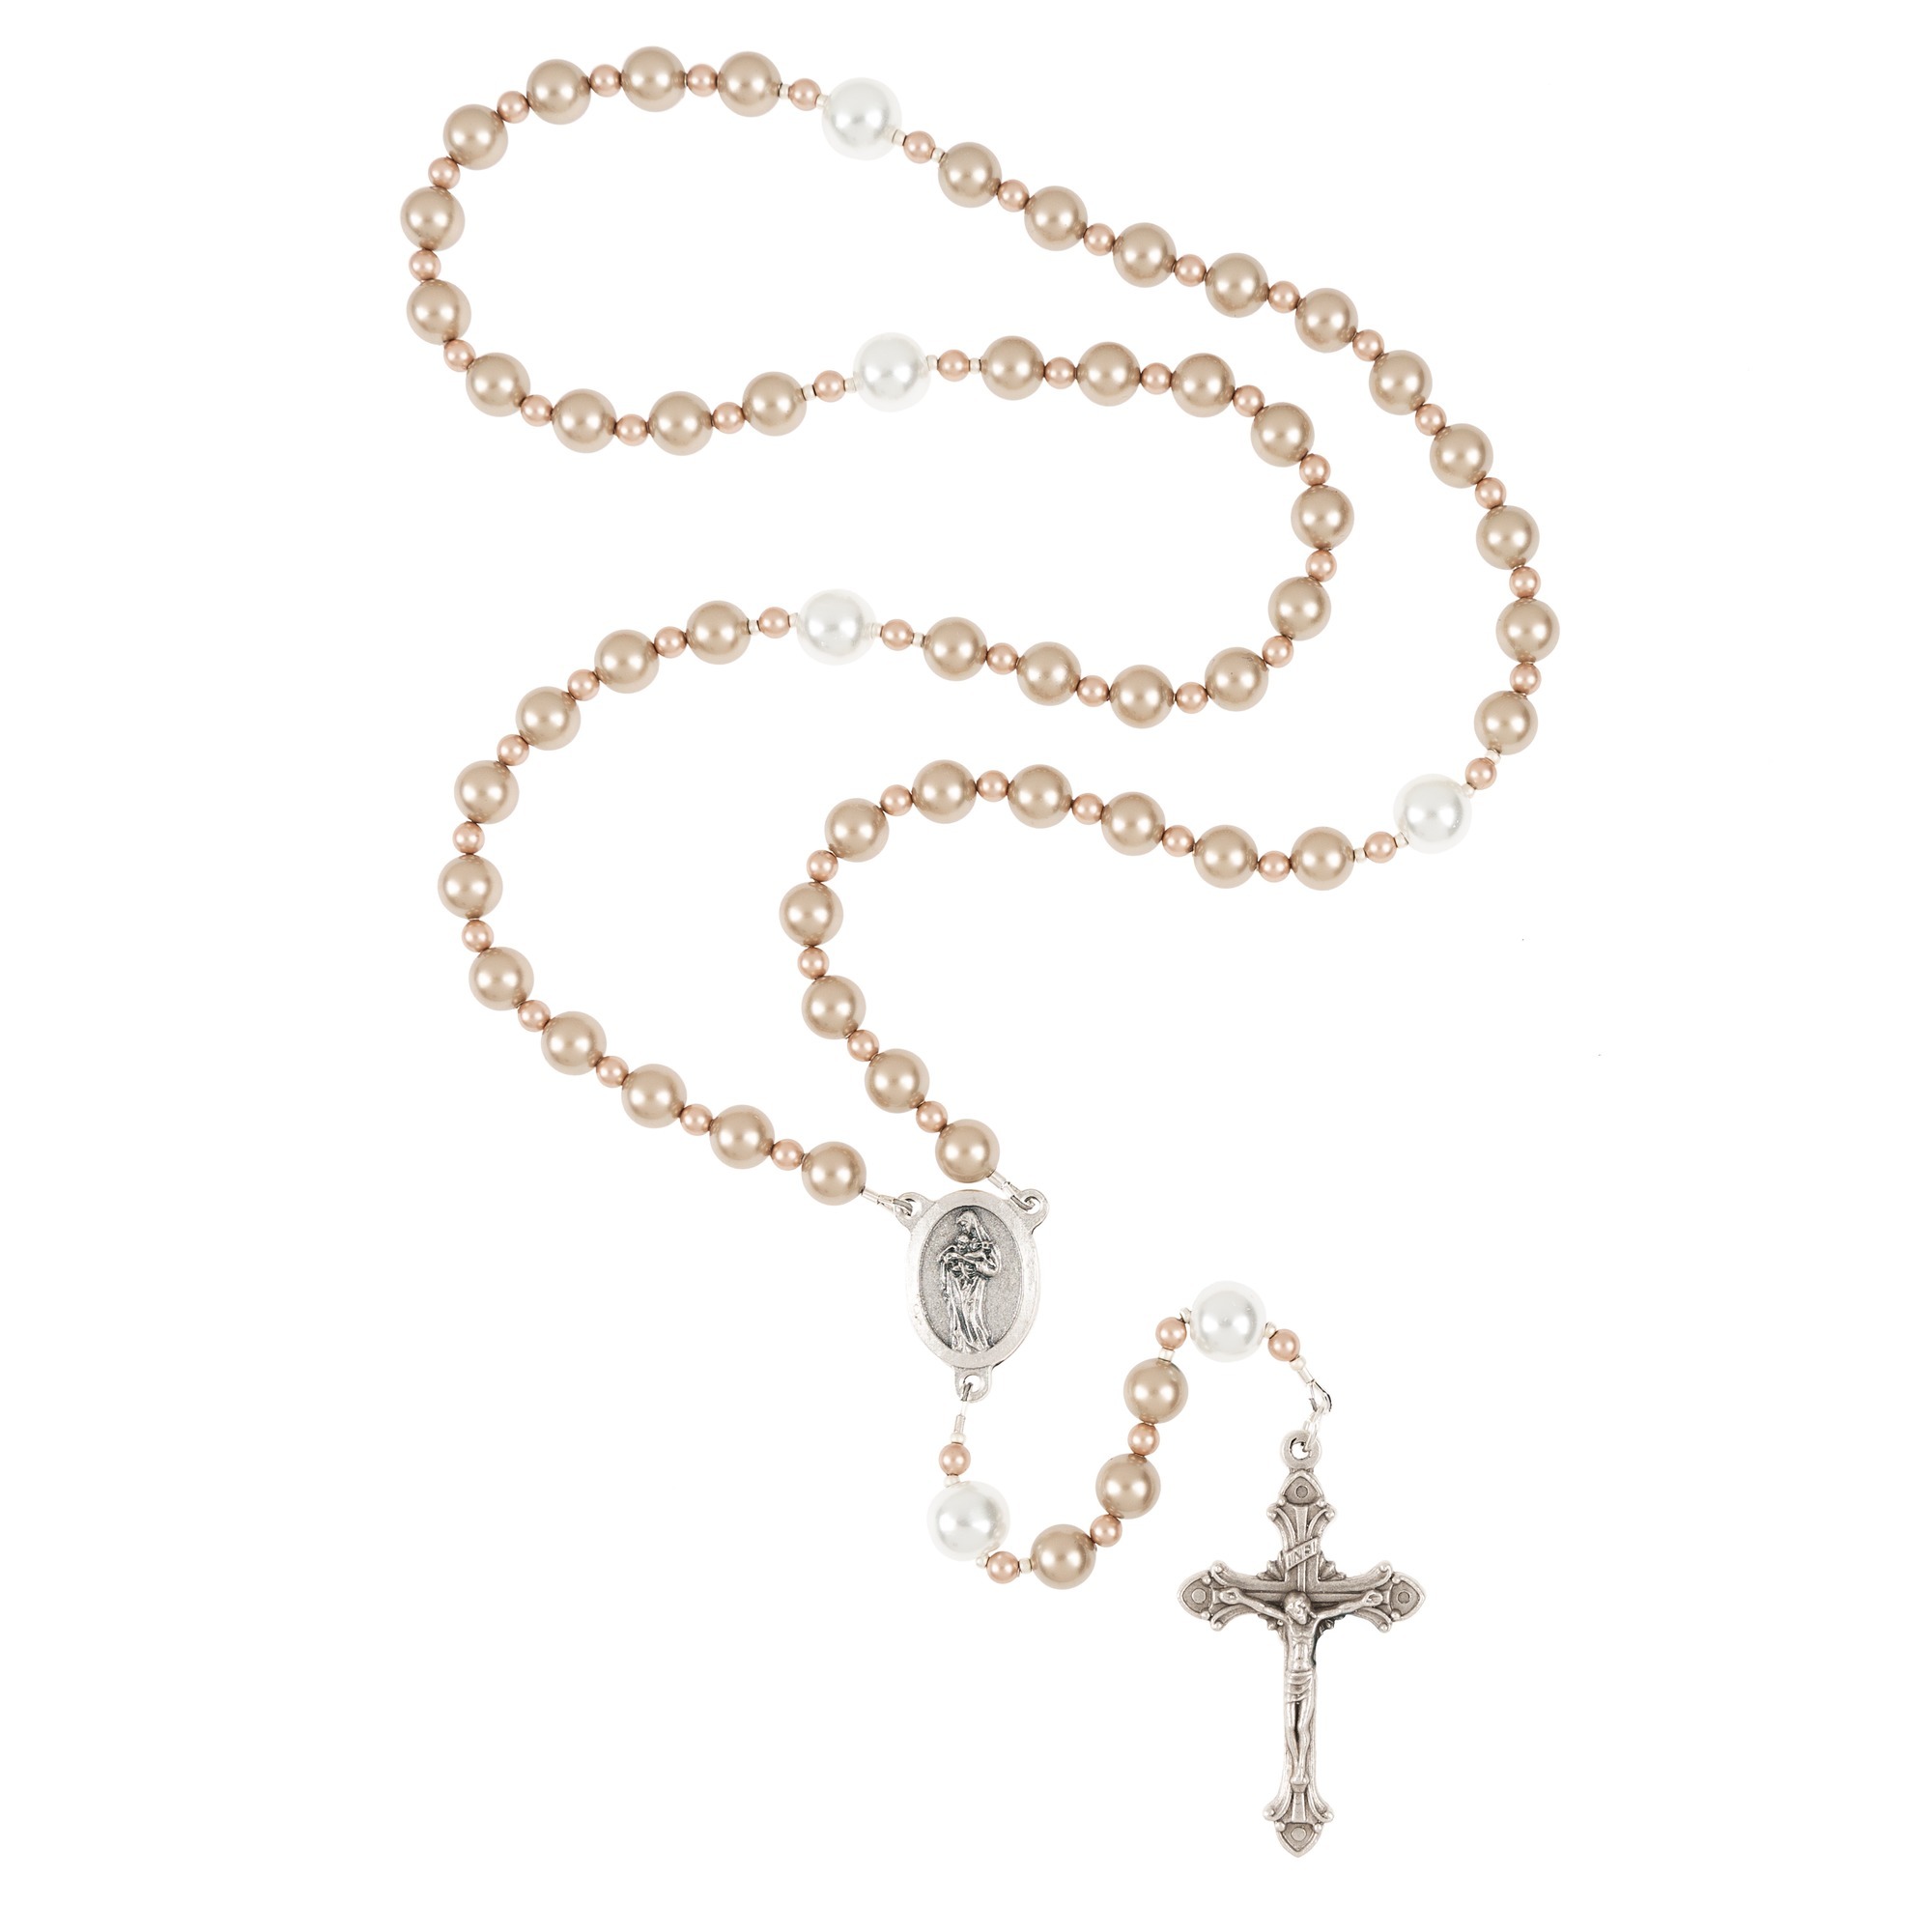 L'Innocence Rosary | The Catholic Company®